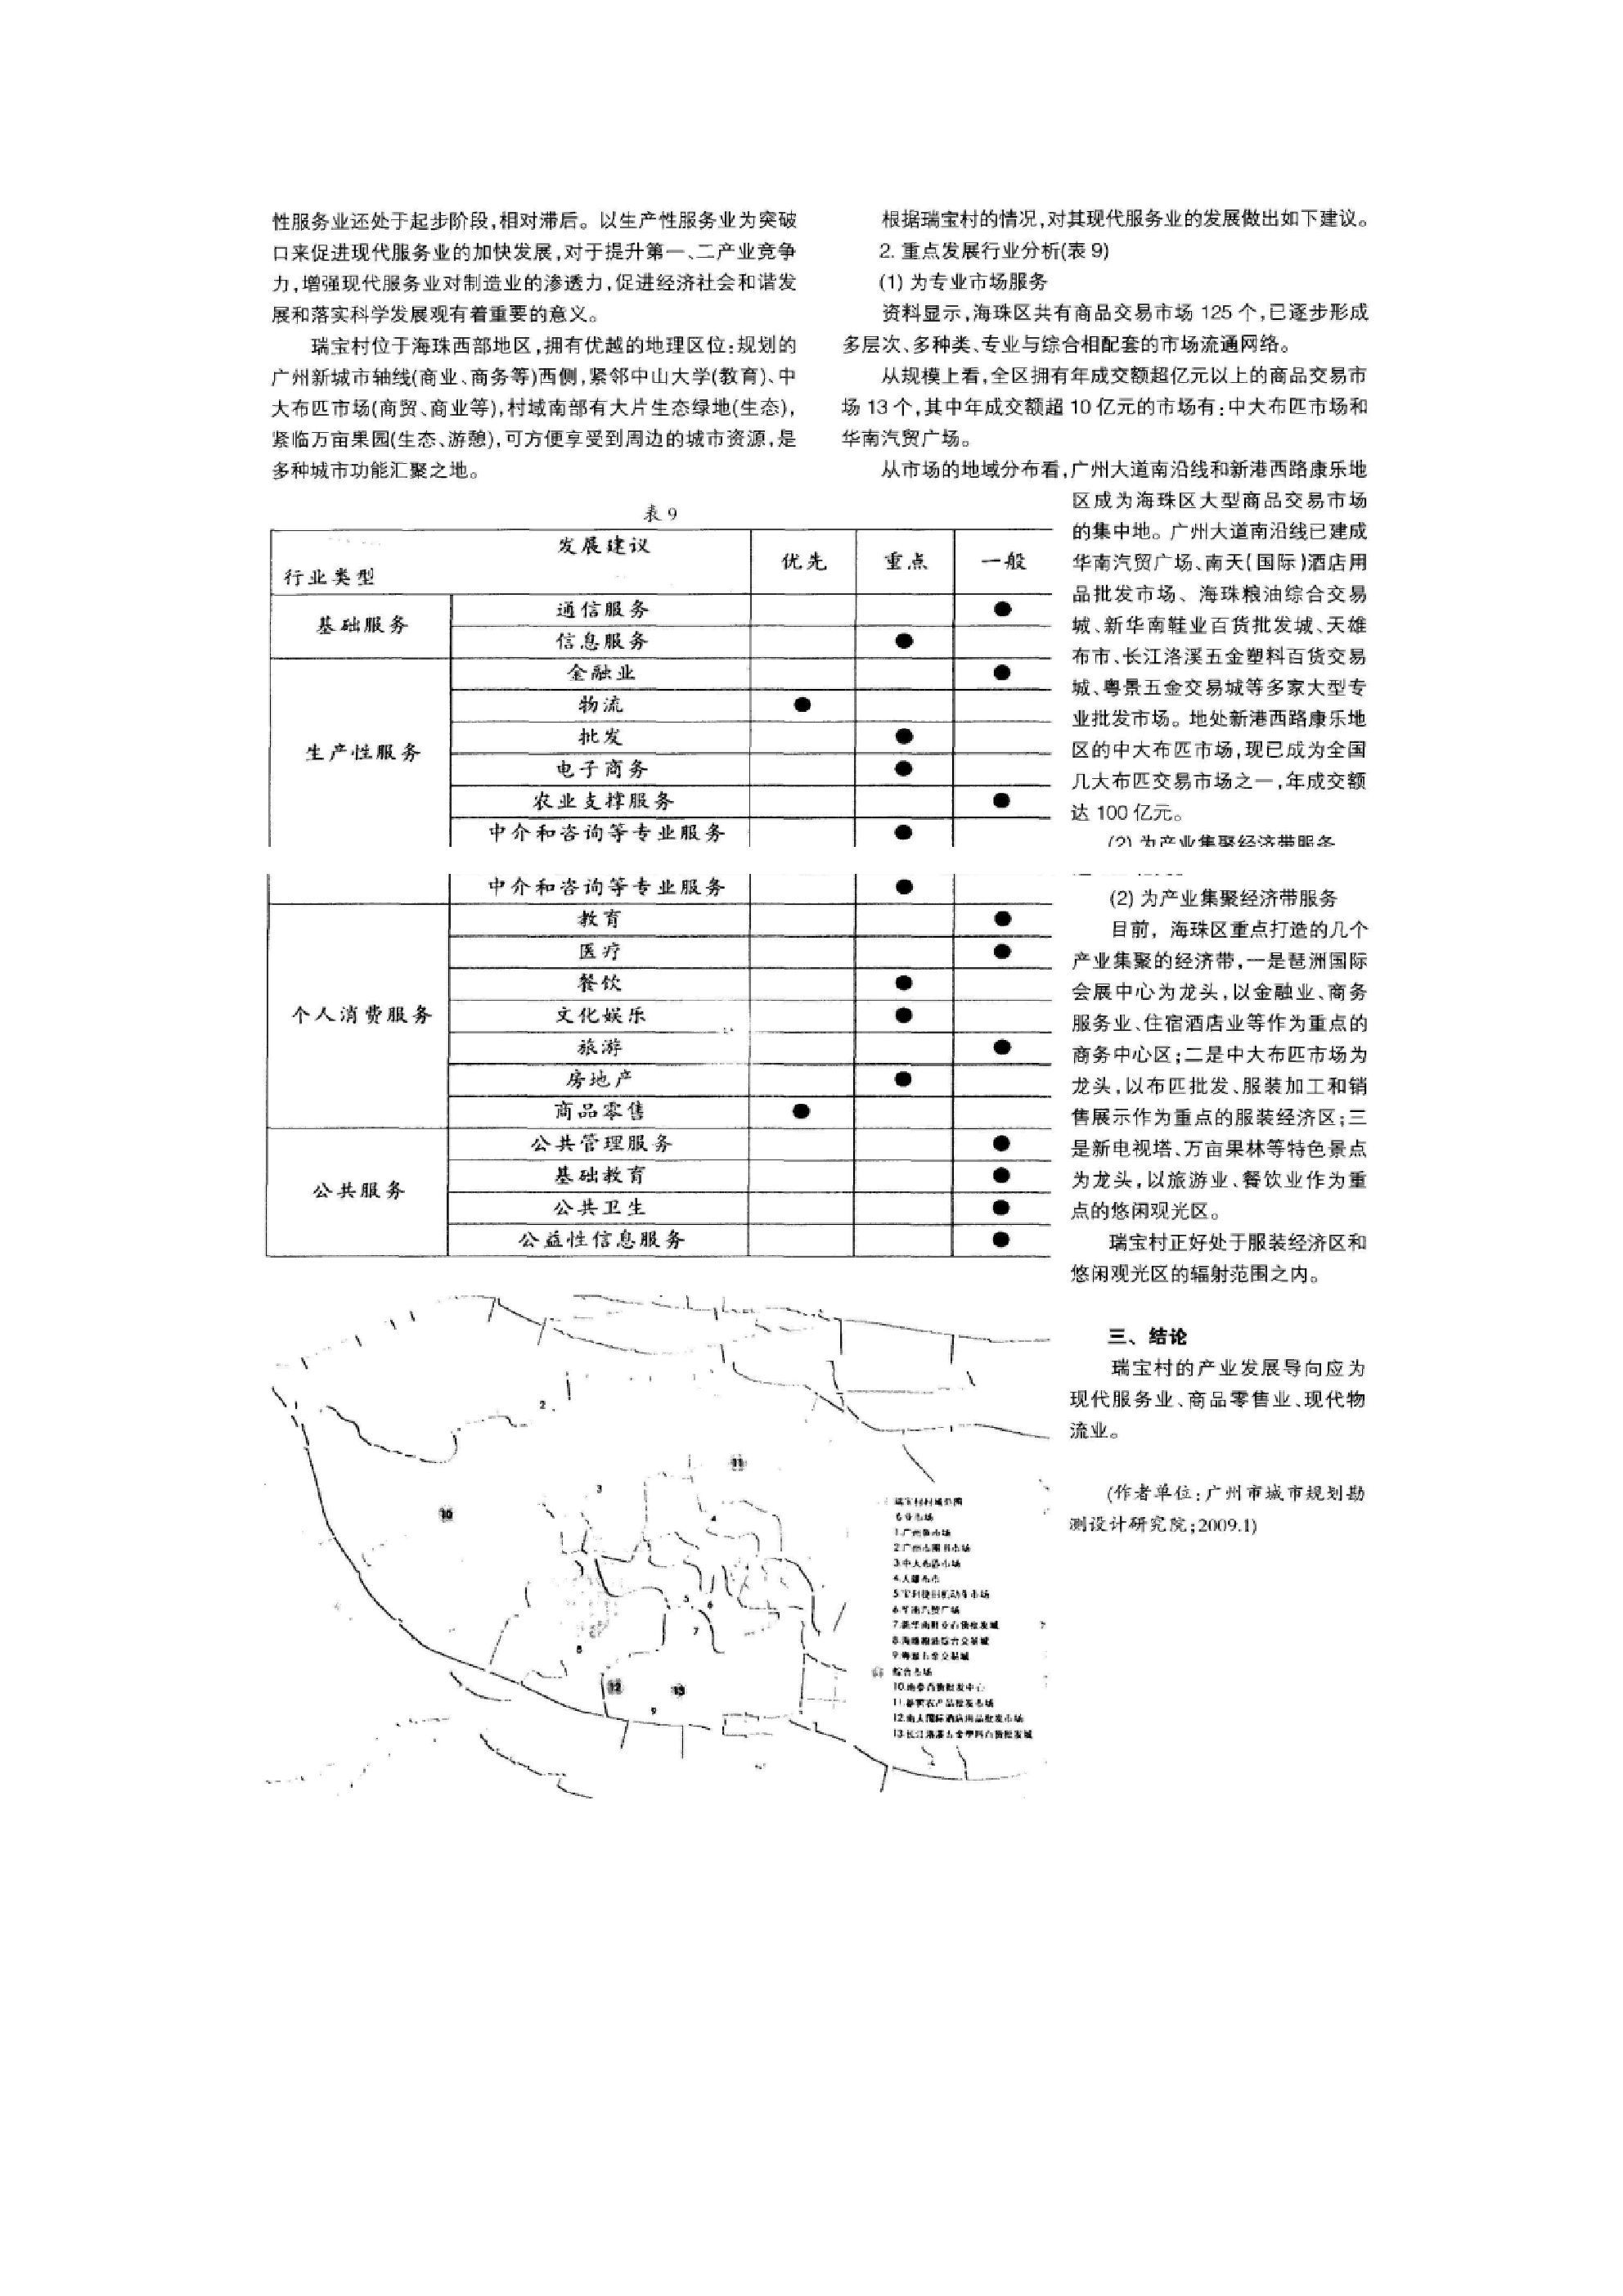 城中村产业发展简析——以广州市瑞宝村为例